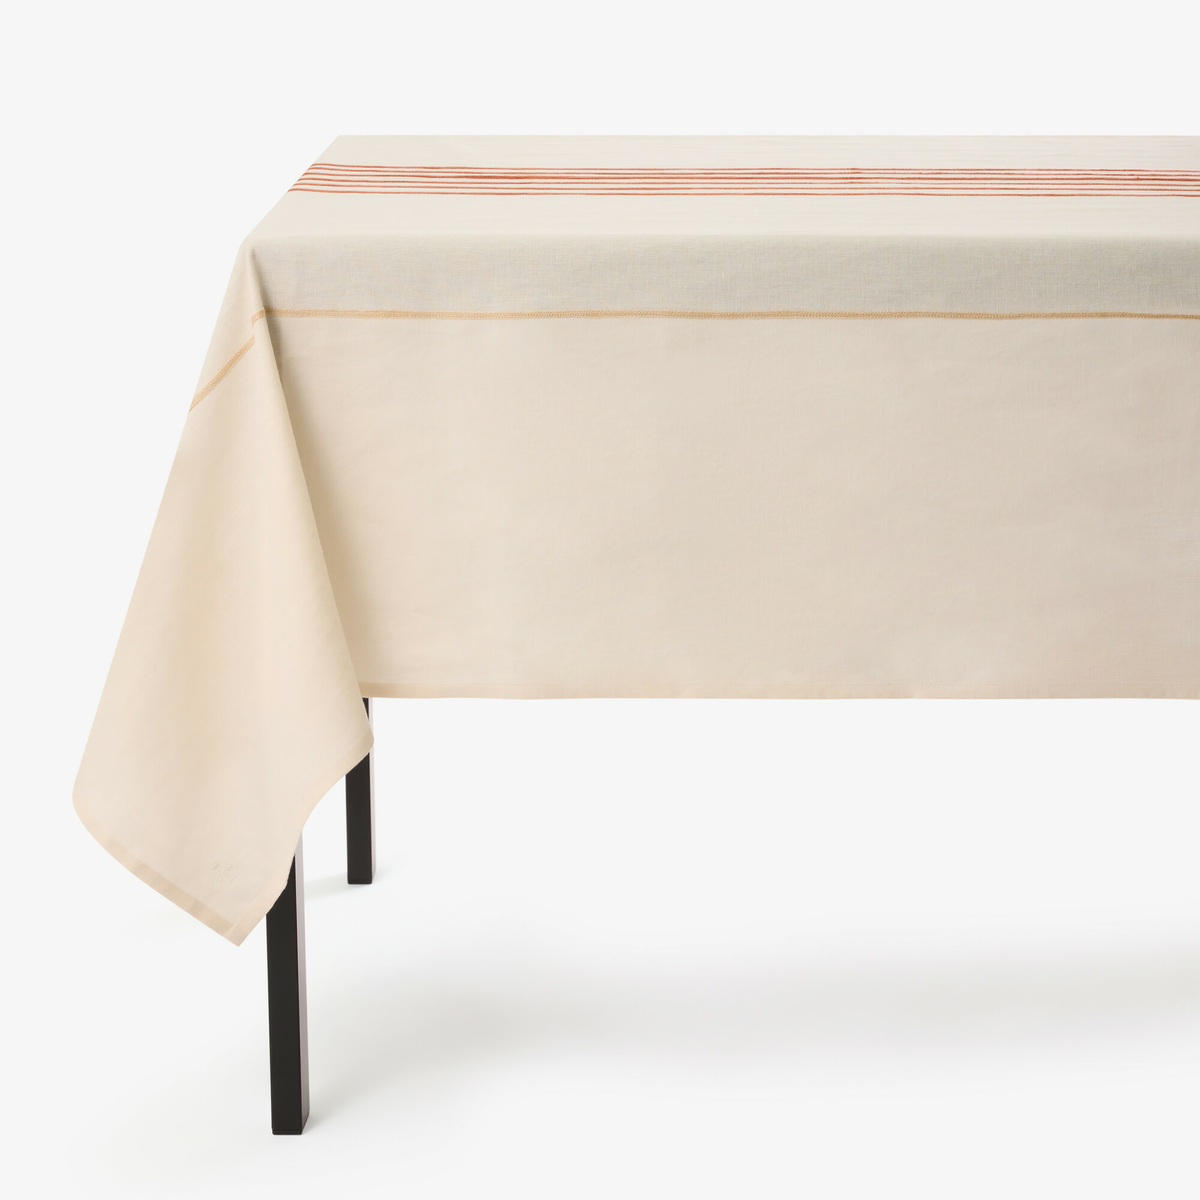 Tablecloth Echo, Ecru / Terracota - Different sizes - Linen / Cotton - image 1